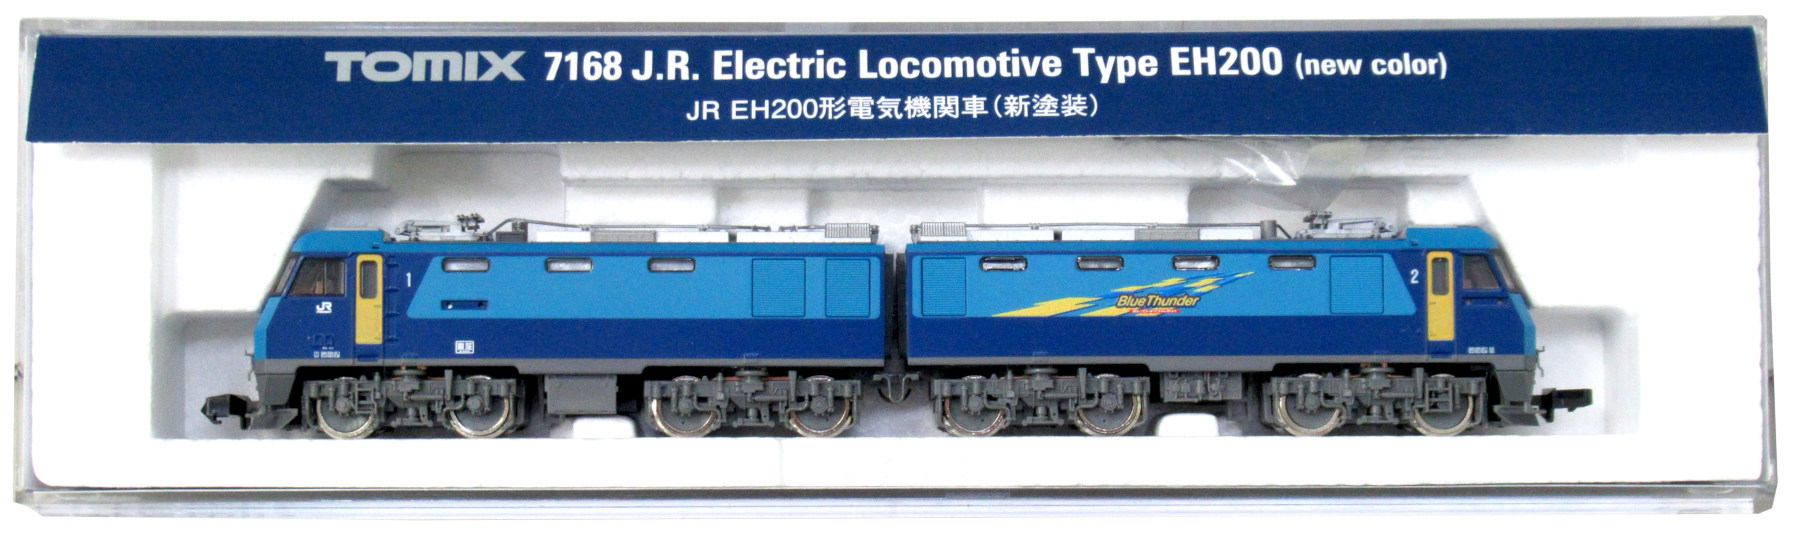 7168 EH200形電気機関車(新塗装)